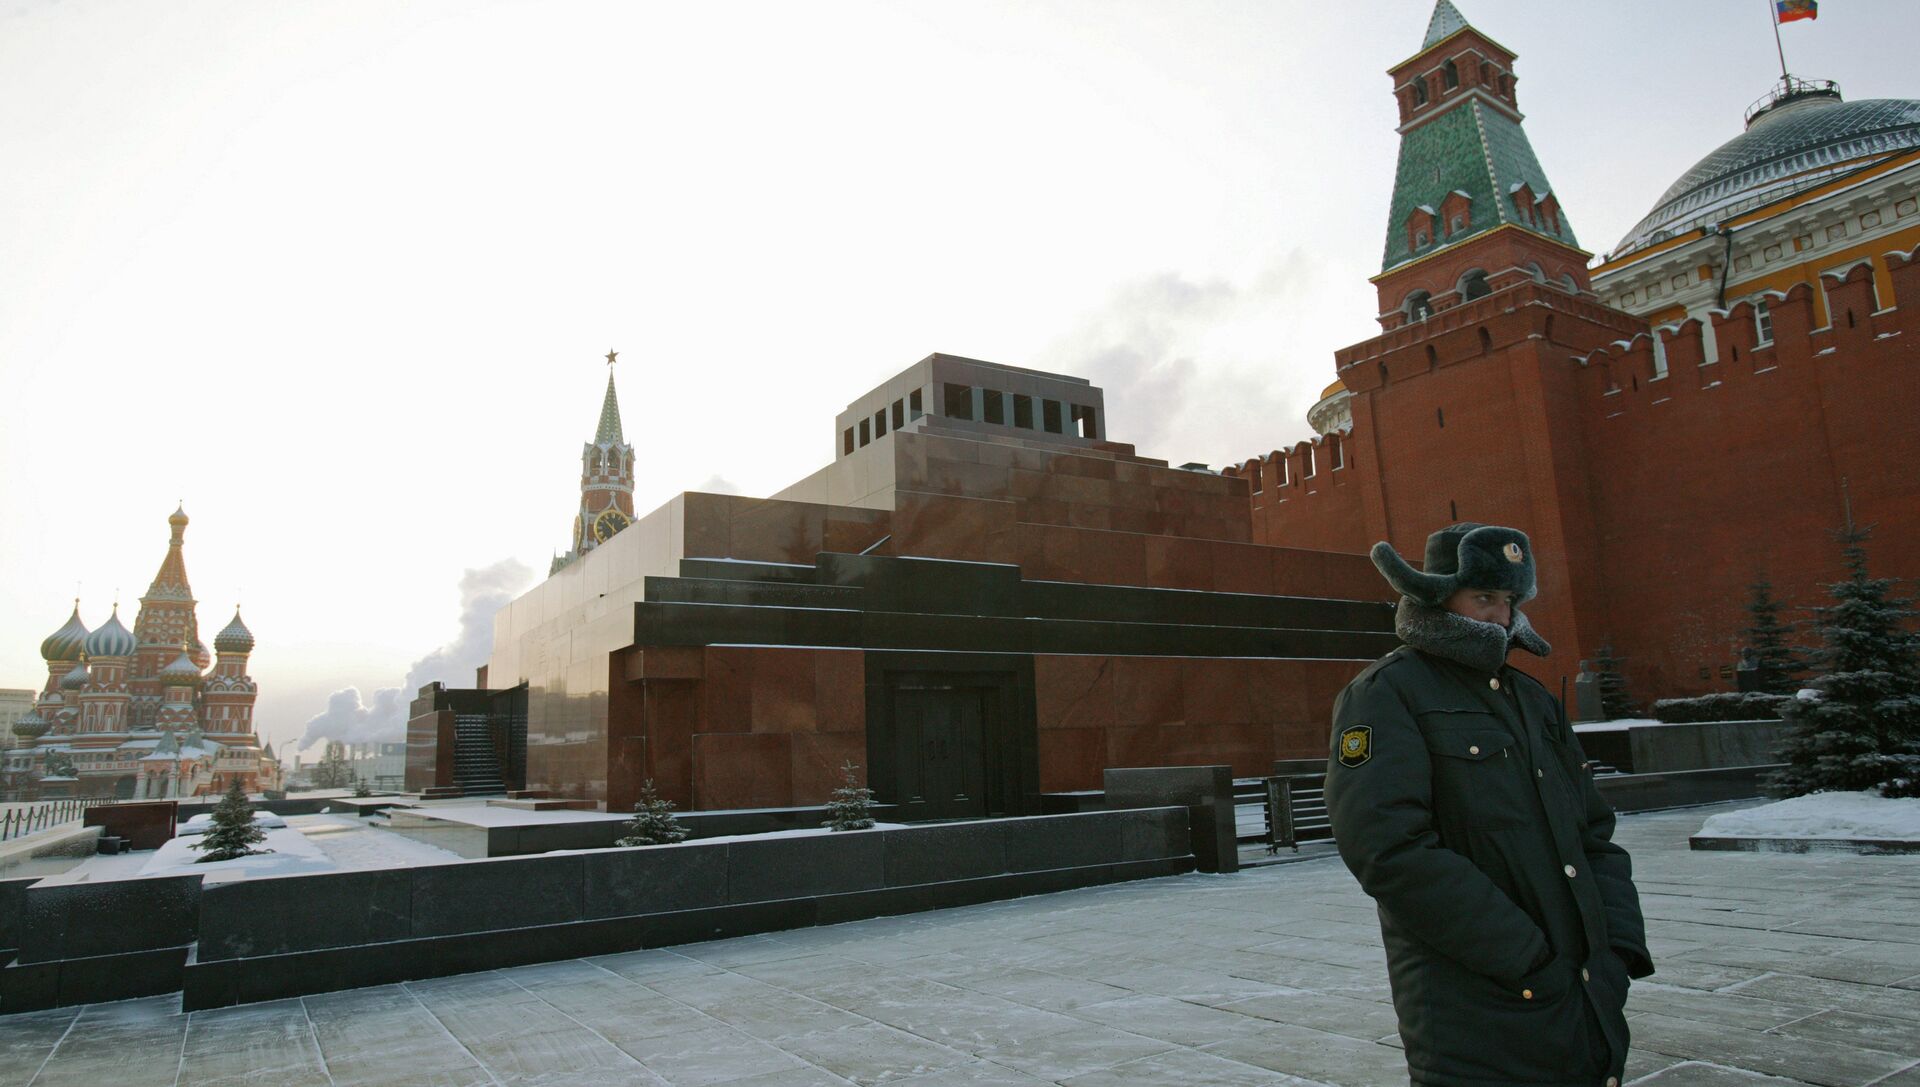 Мавзолей Ленина на Красной площади - РИА Новости, 1920, 17.11.2020